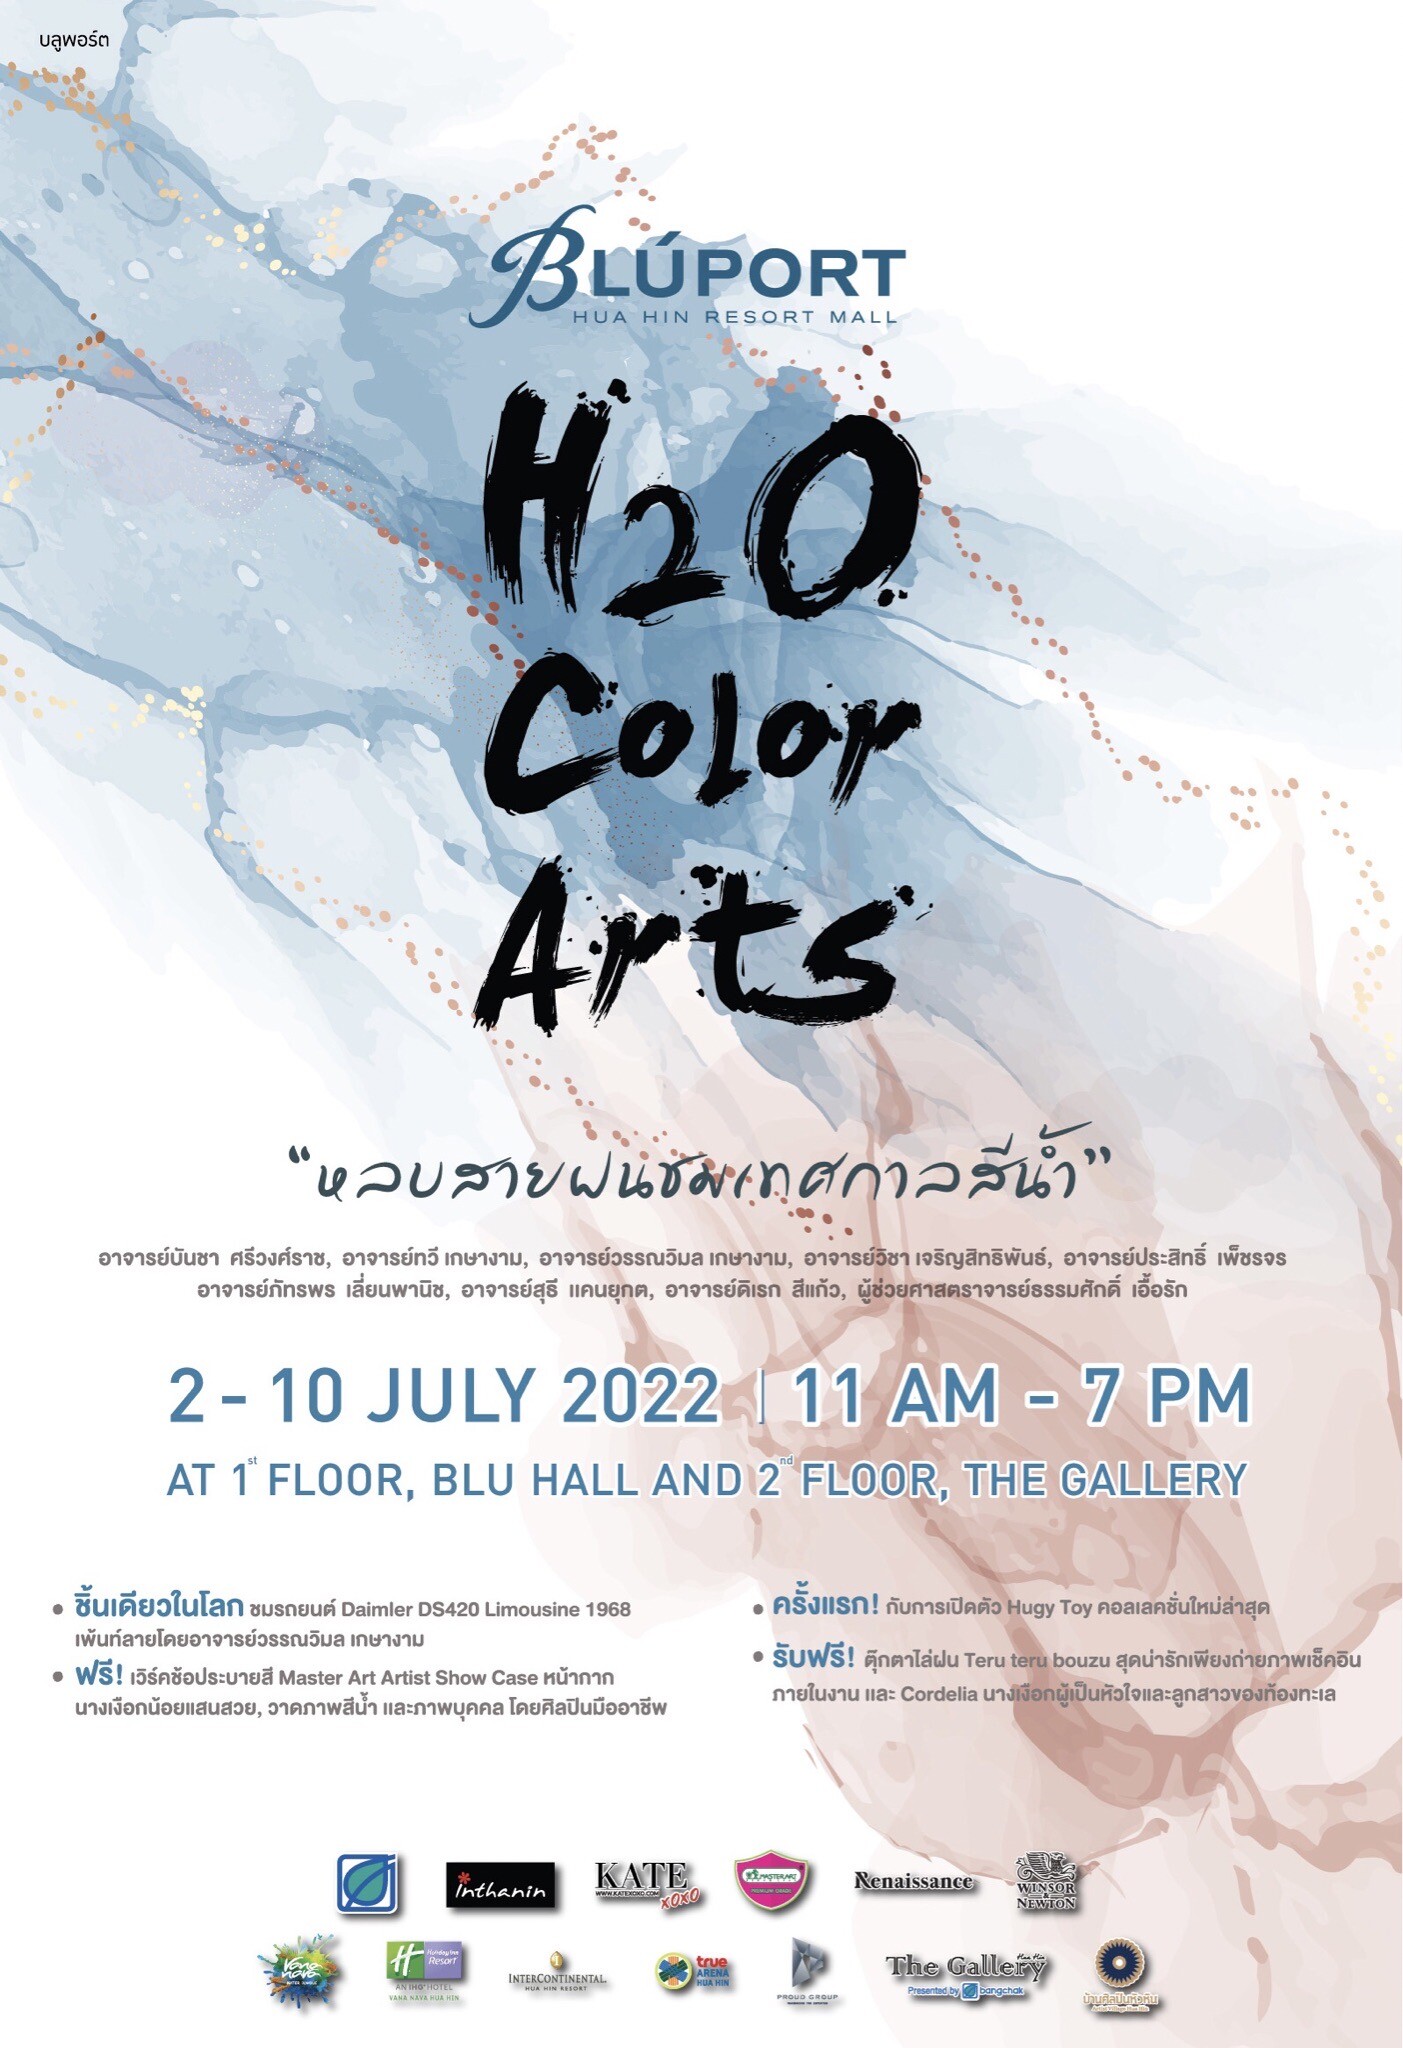 บลูพอร์ต หัวหิน เดอะแกลเลอรี หัวหิน ดึง 9 ศิลปินดัง ชมภาพวาดสีน้ำในงาน "H2O Color Arts หลบสายฝนชมเทศกาลสีน้ำ" 2 - 10 กรกฎาคมนี้ ที่บลูพอร์ต หัวหิน